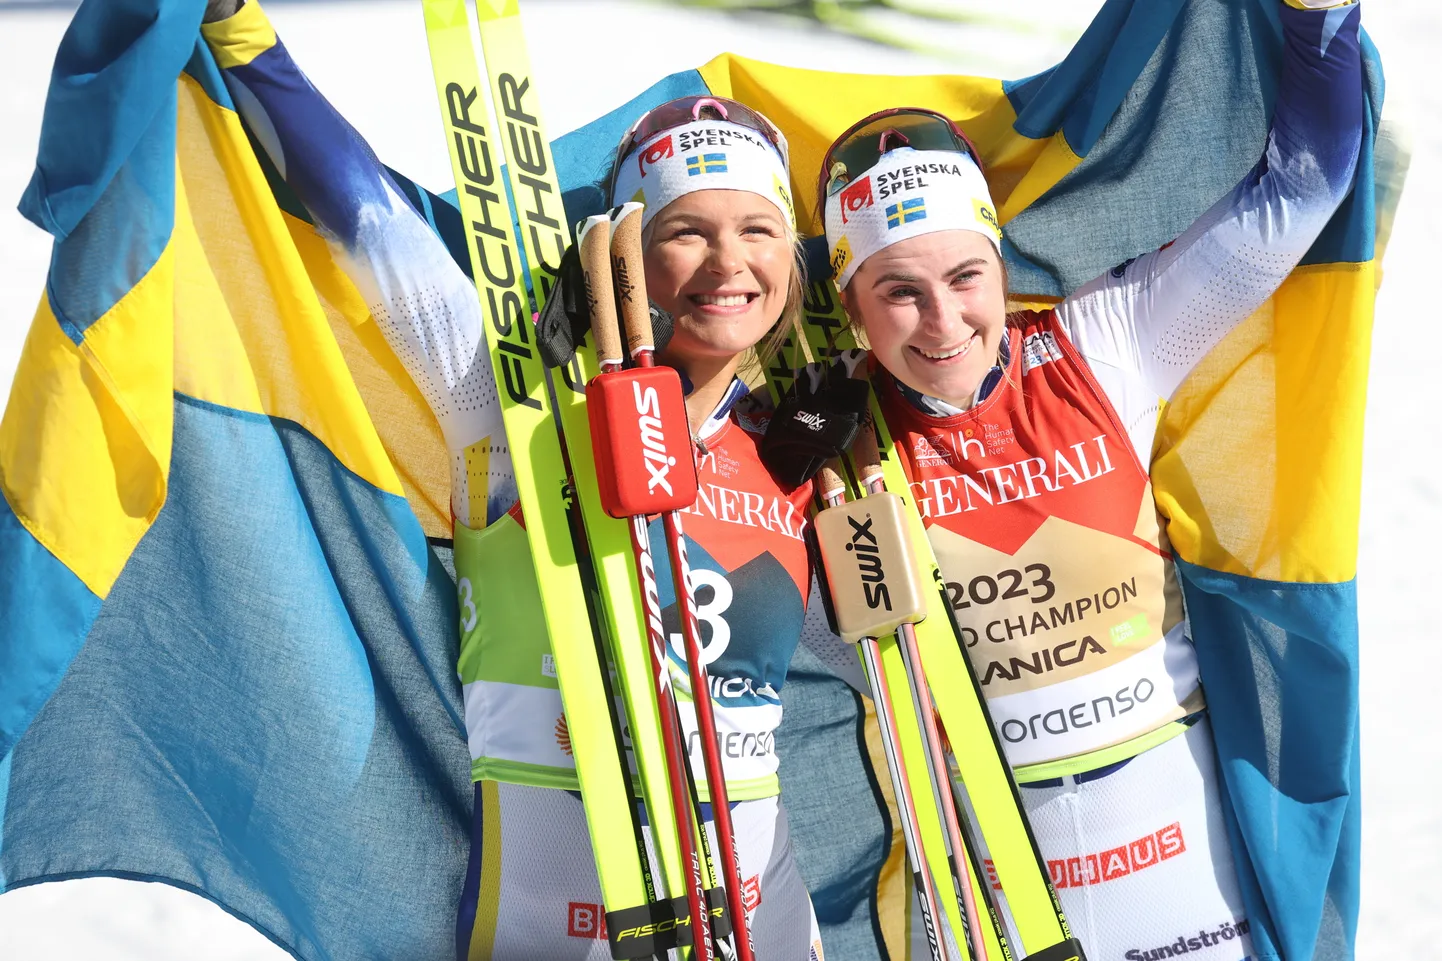 Tour de Ski üldvõitja Frida Karlsson (vasakul) ja Planica MMil kahekordseks maailmameistriks tulnud Ebba Andersson. Mõlema saavutustest jäi väheks, et mahtuda Rootsi aasta naissportlase nominentide sekka.